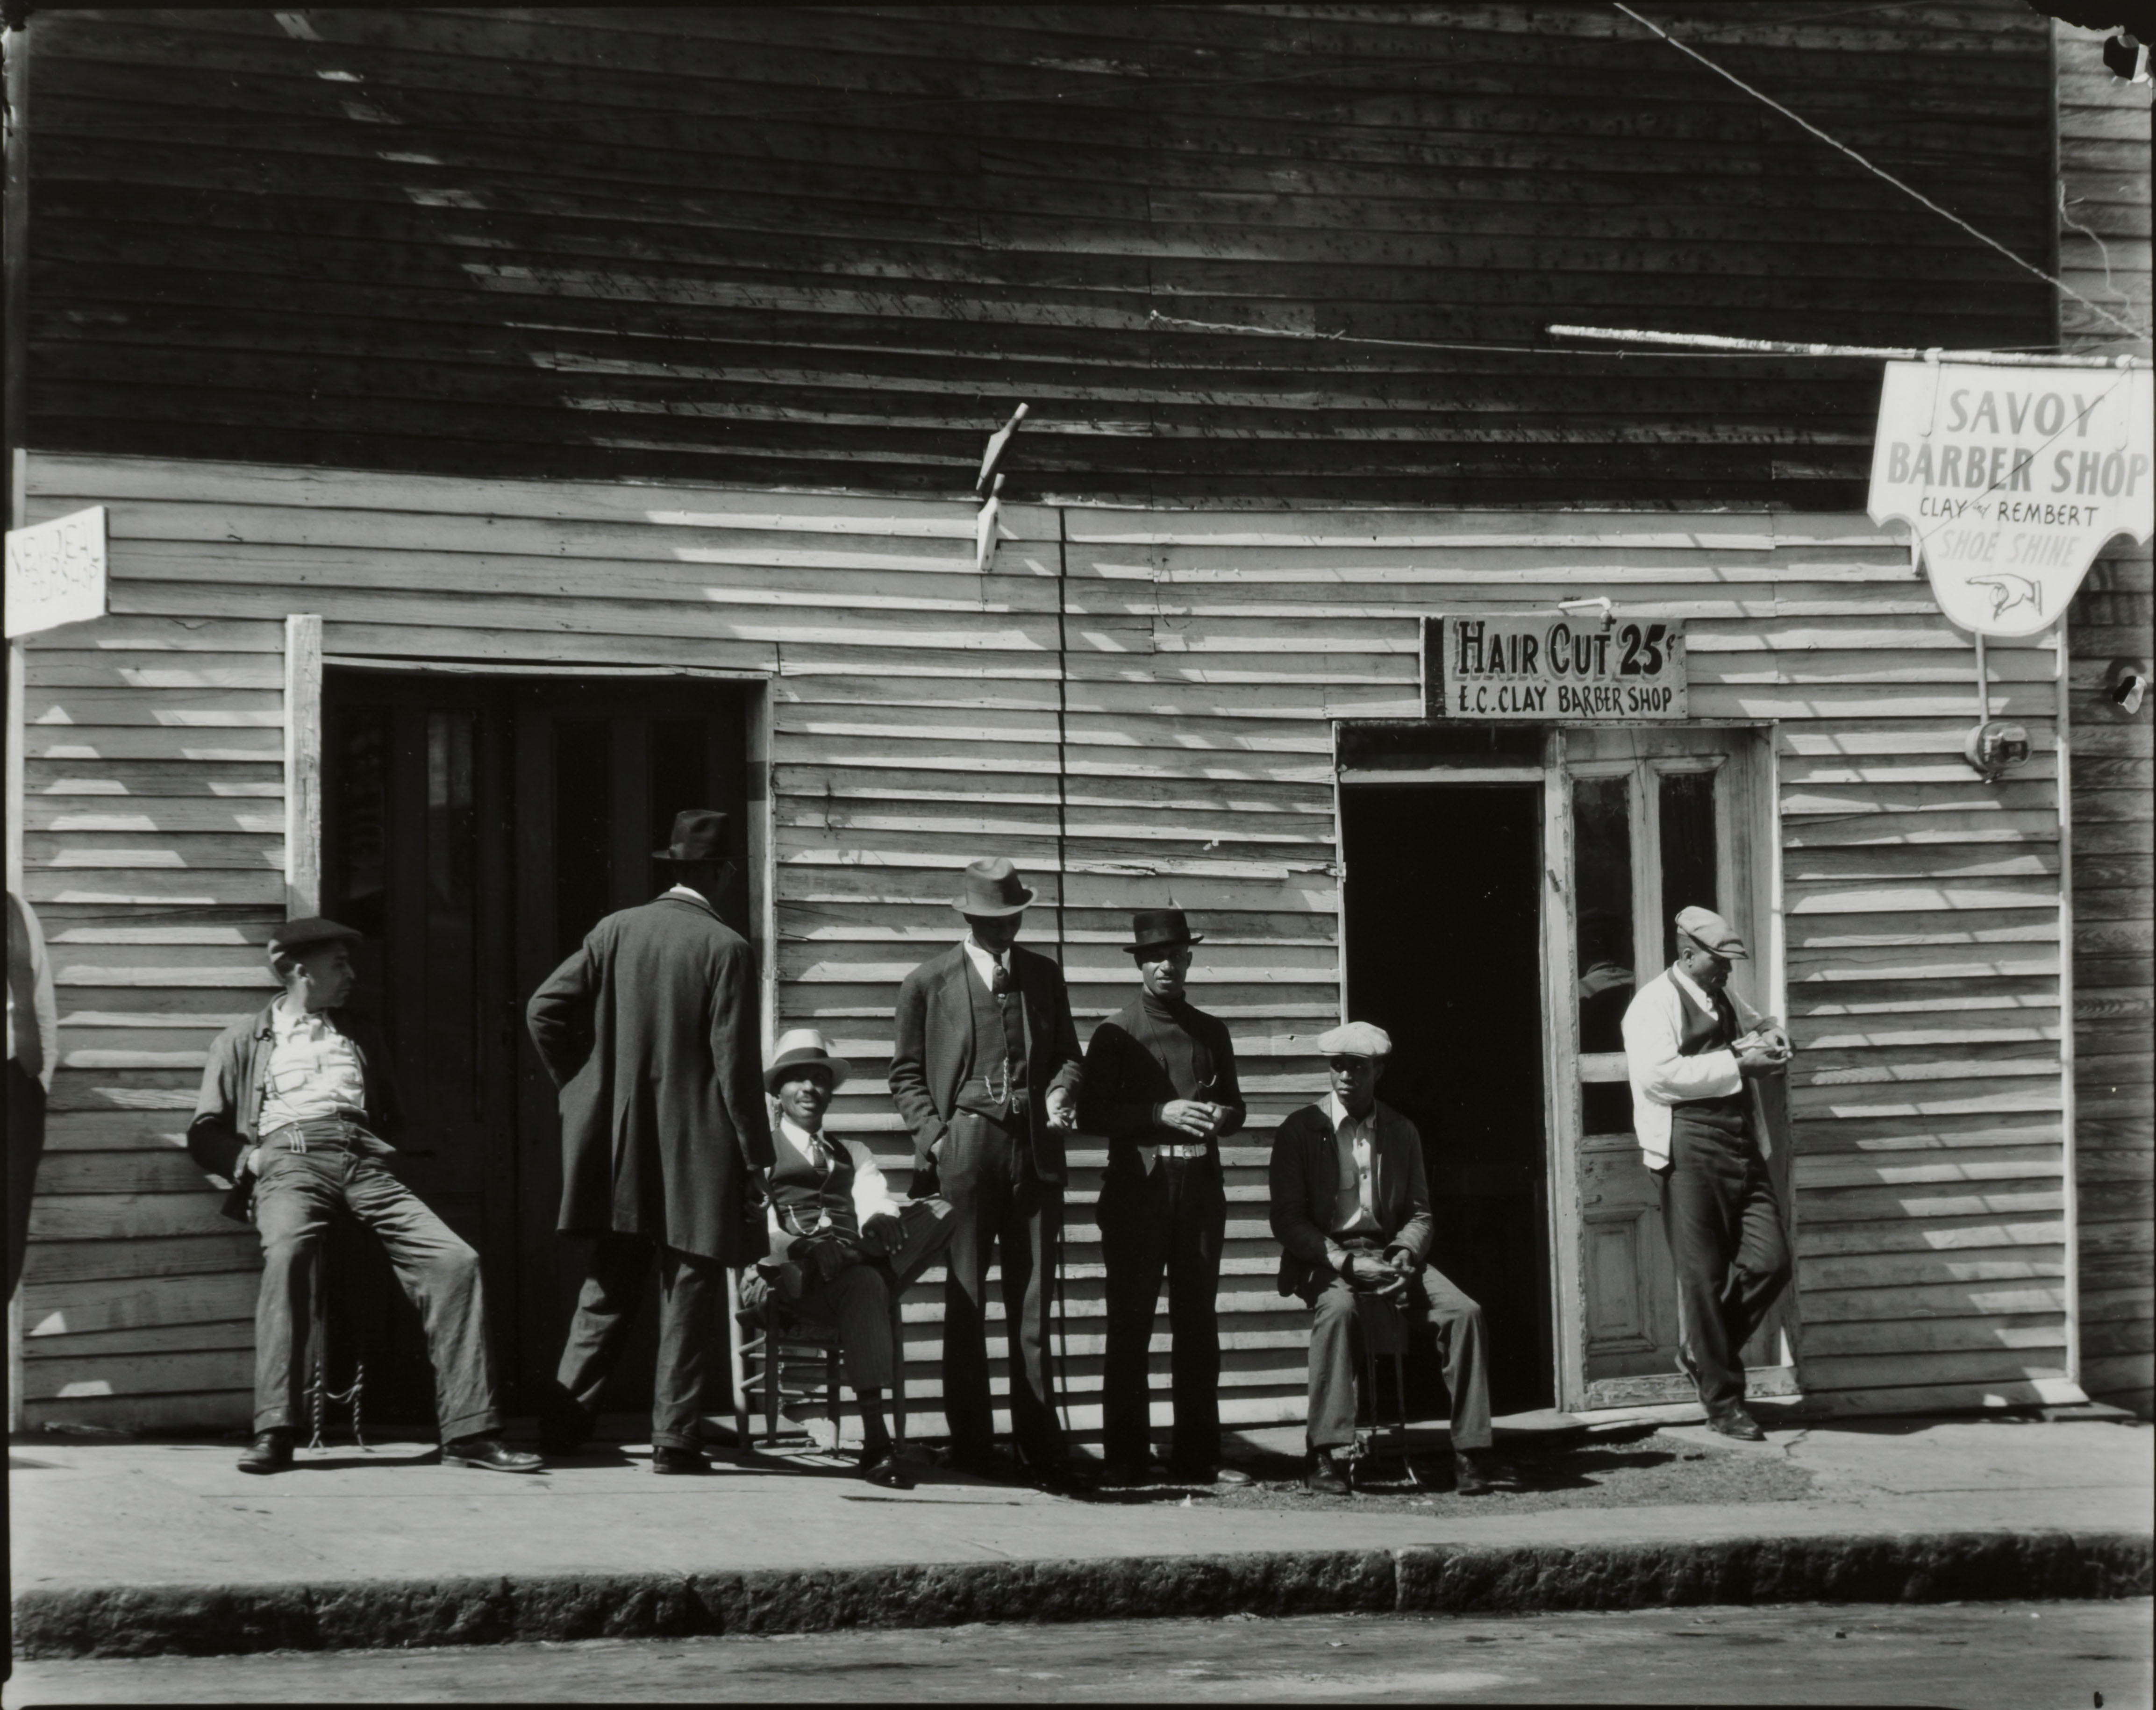 Savoy Barber Shop, Vicksburg, Mississippi